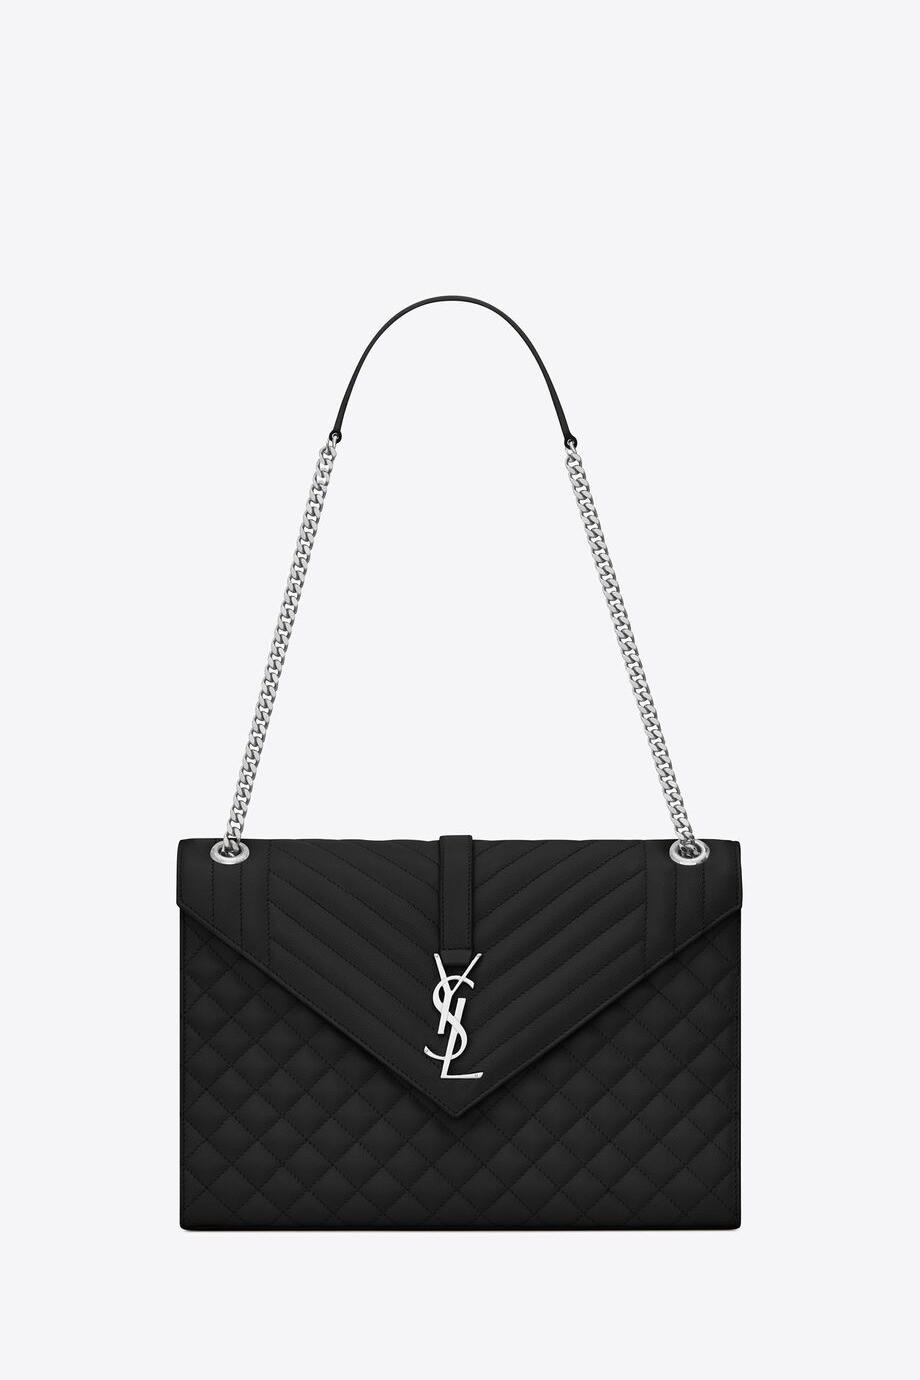 Saint Laurent - Envelope Shoulder Bag - Black/Silver